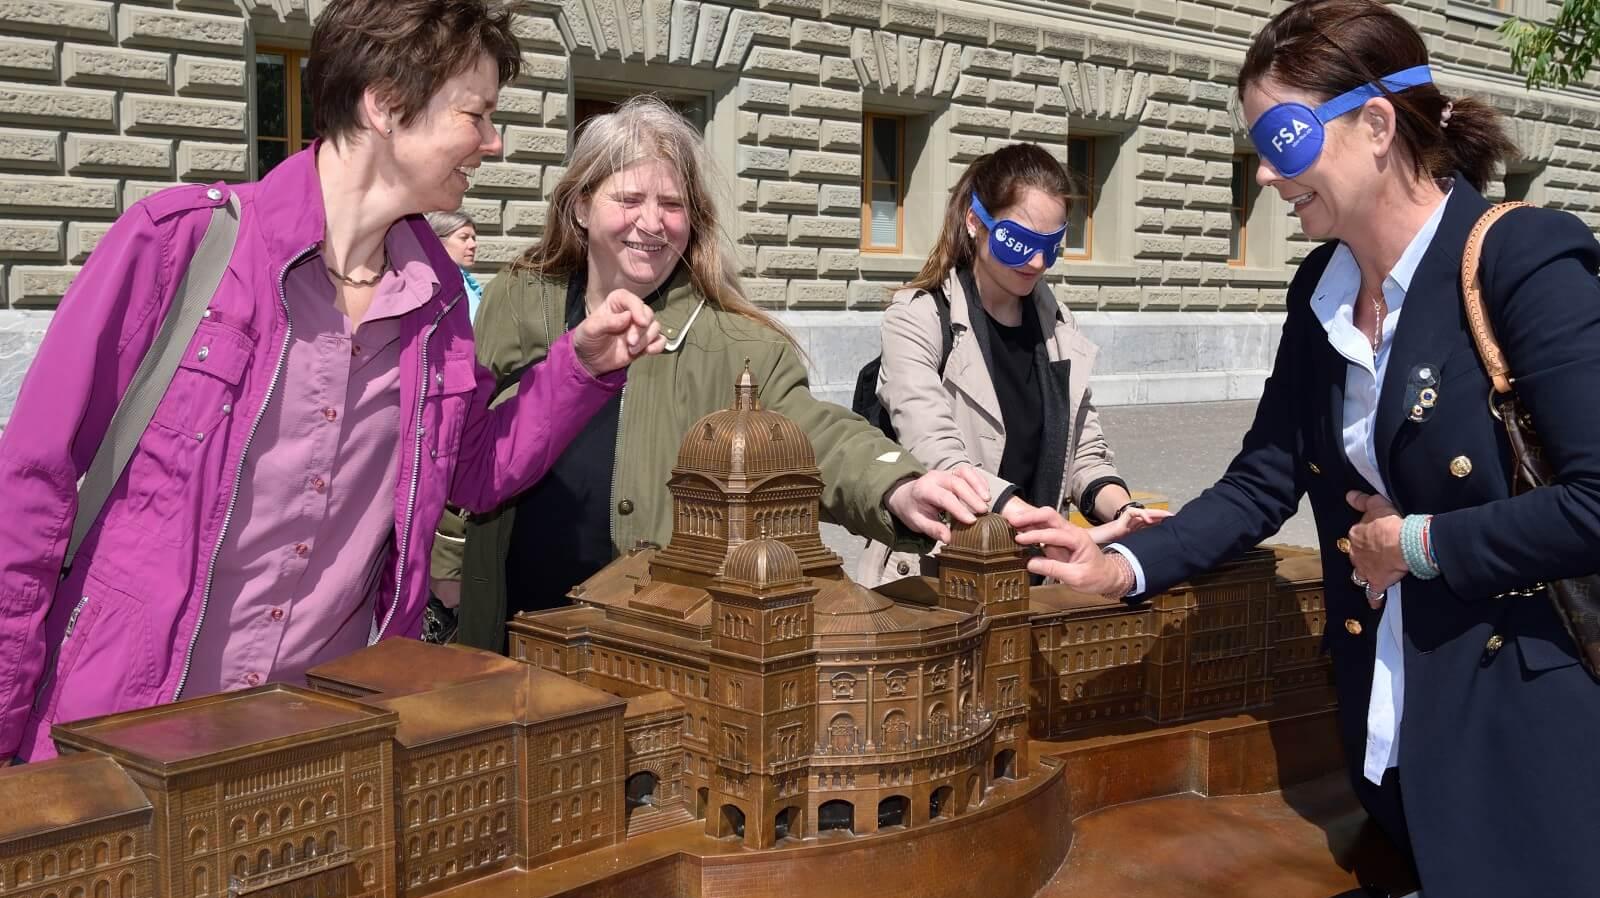 Les visiteurs touchent le modèle du Palais fédéral